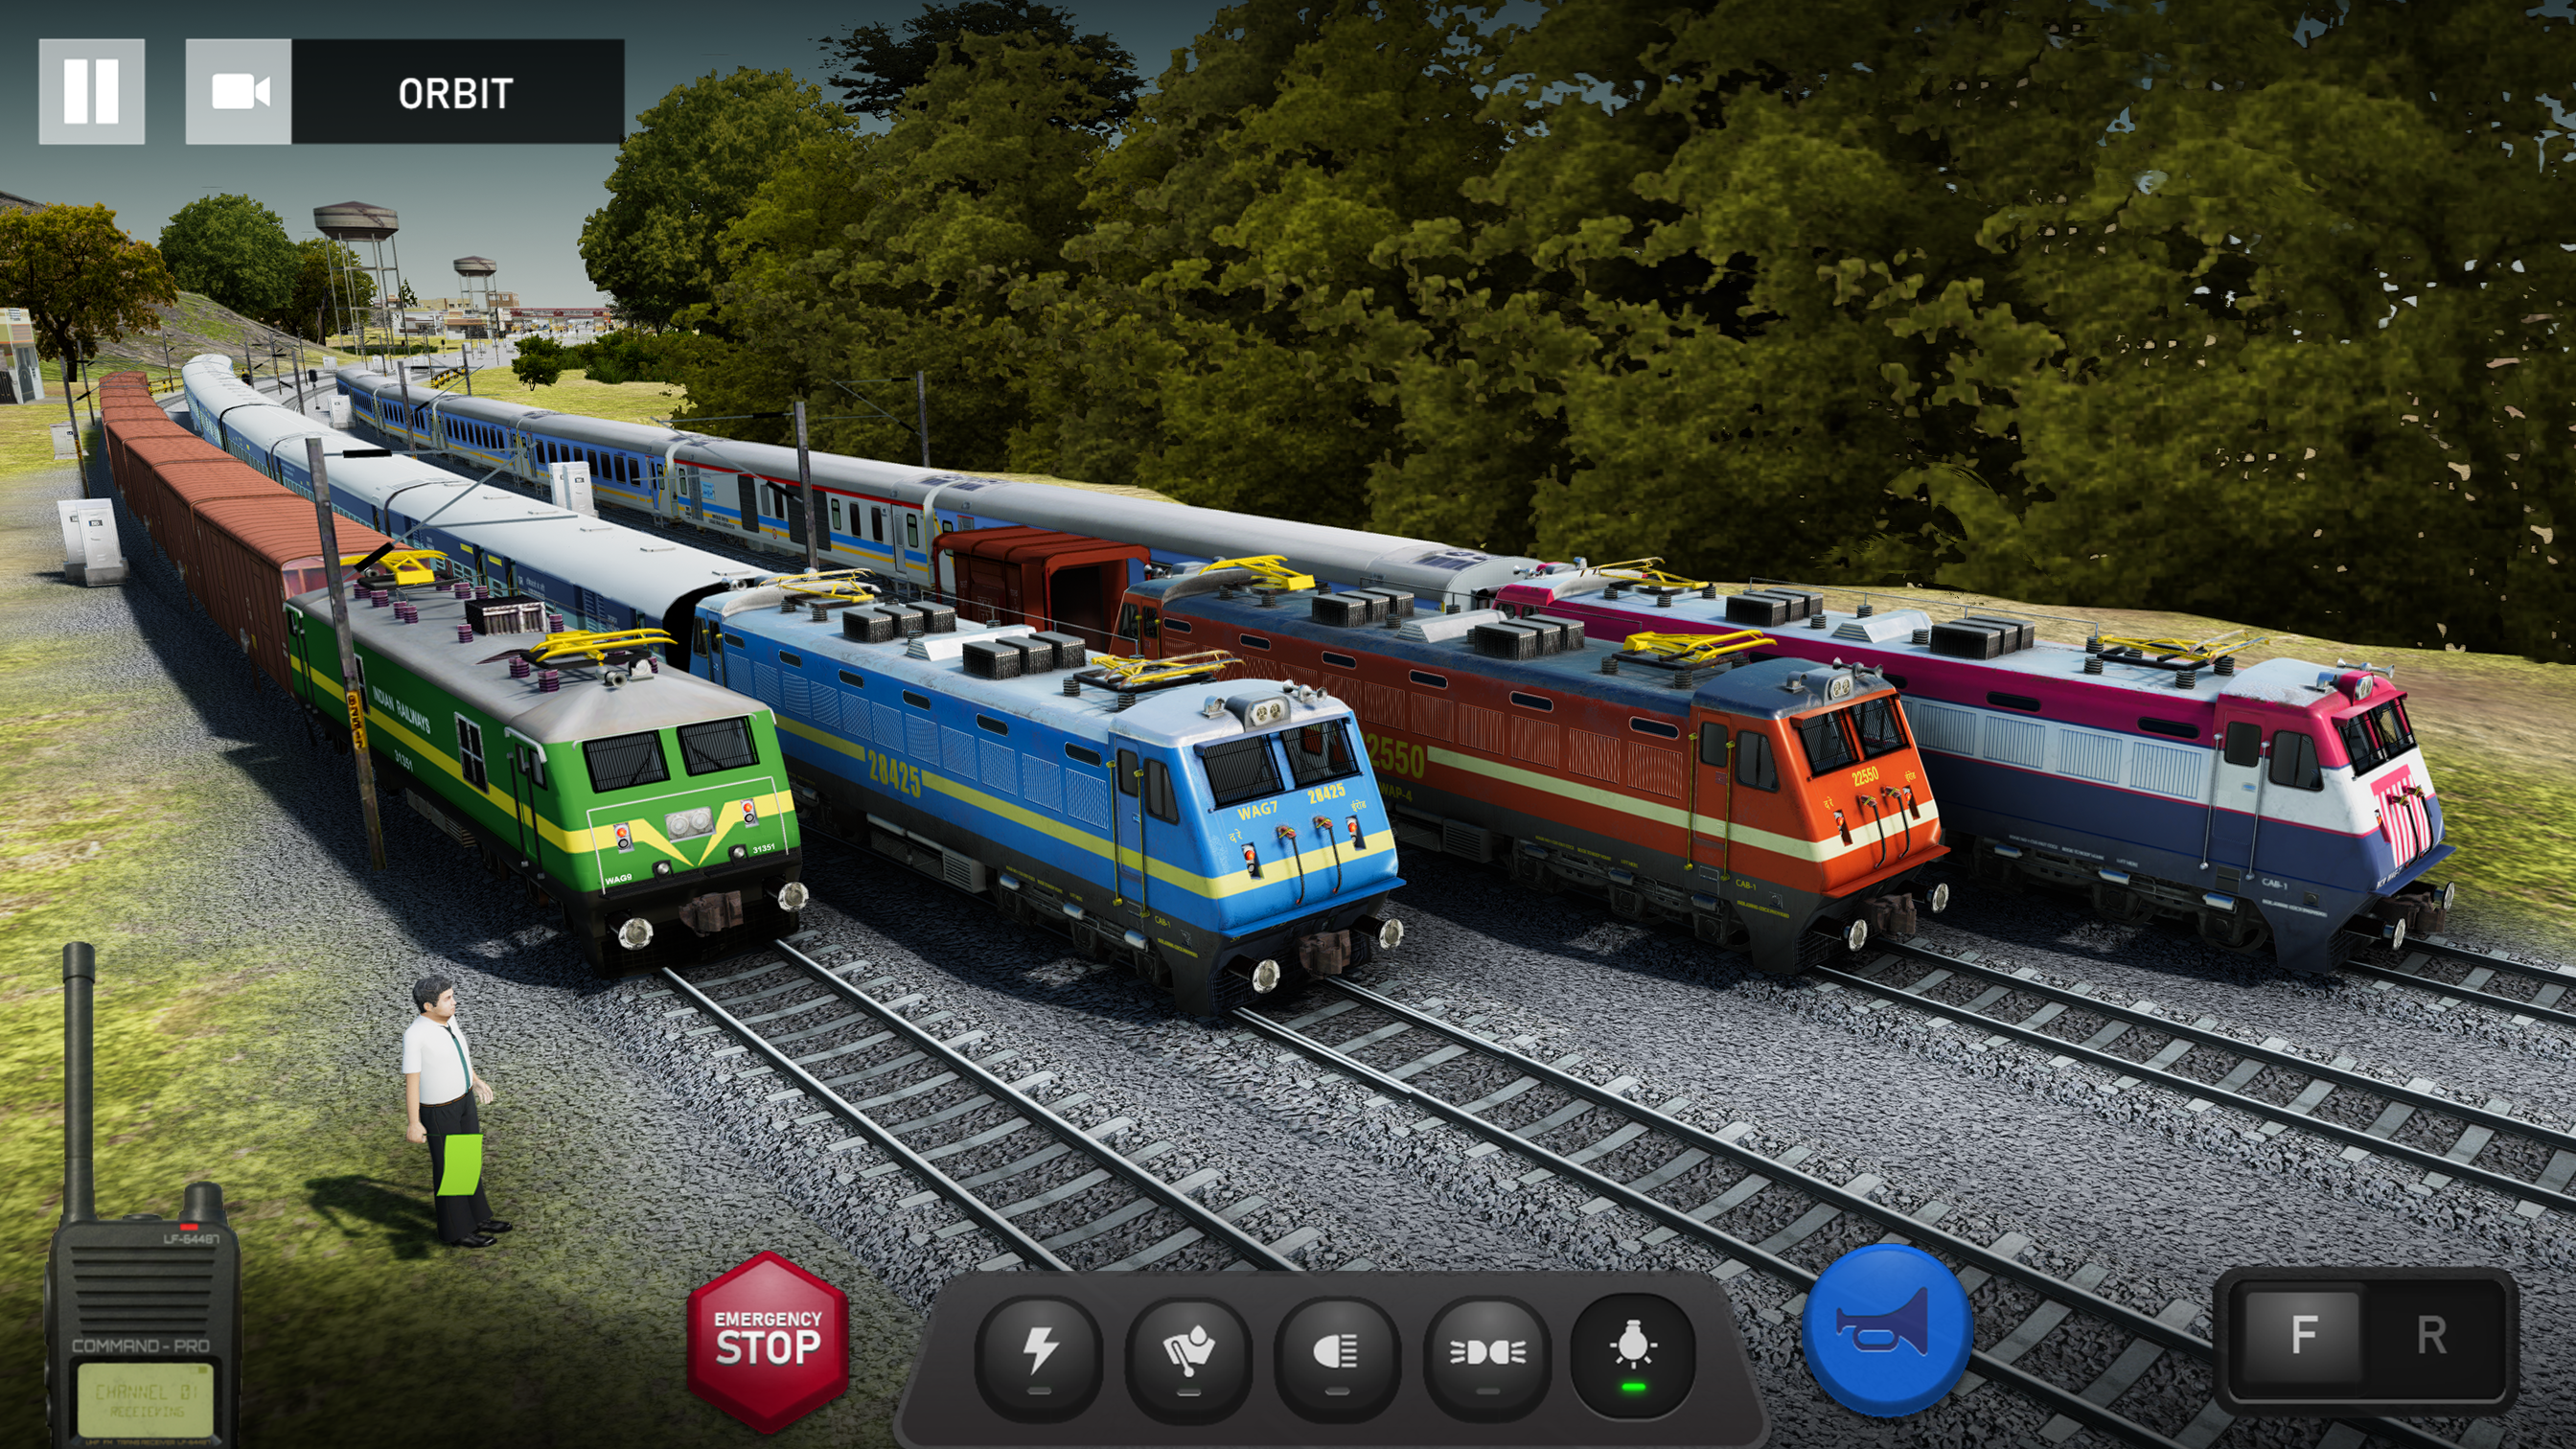 train simulator games